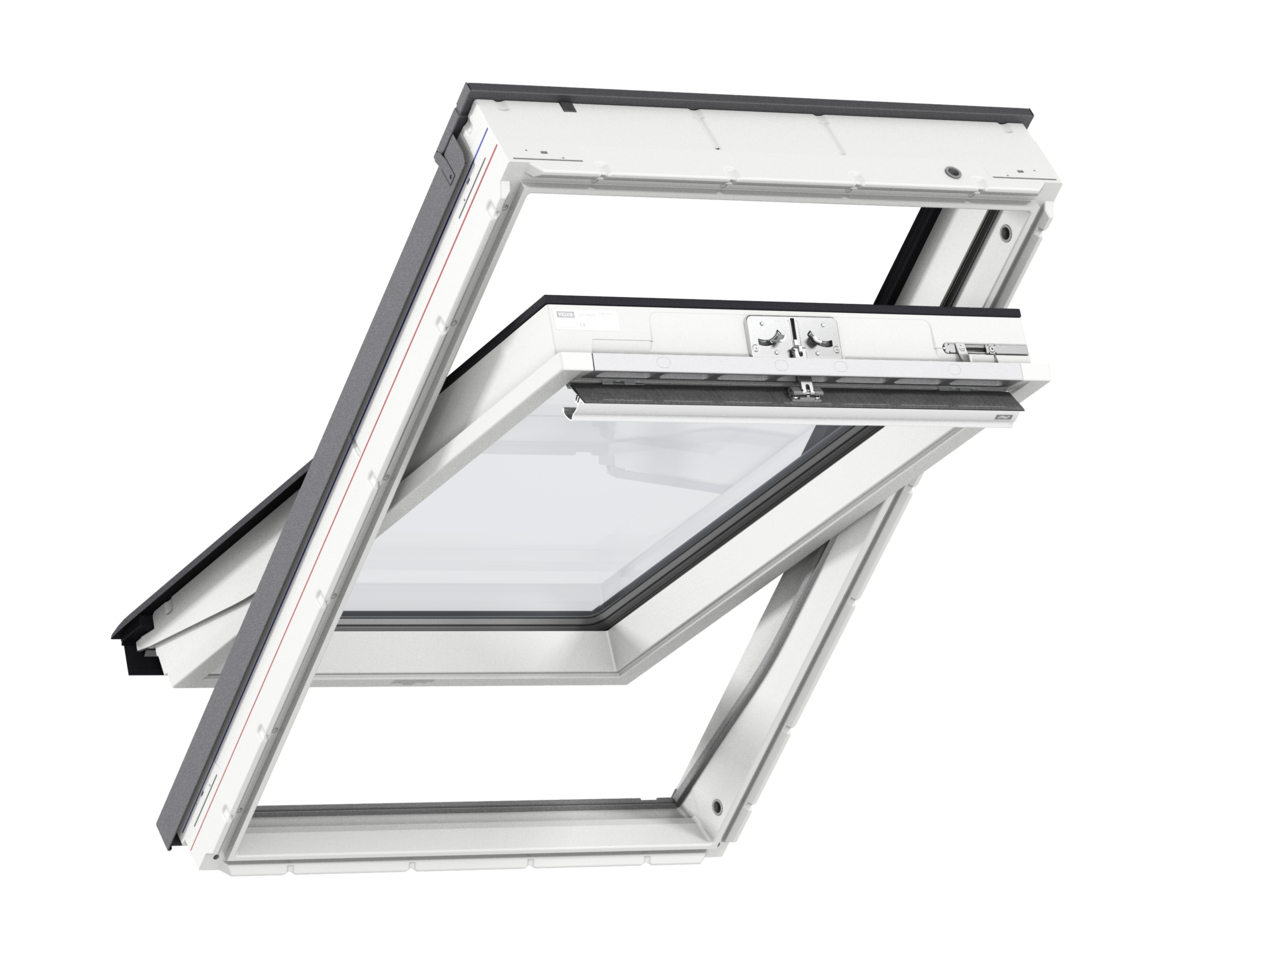 Мансардное двухкамерное белое окно Velux (Велюкс) GLU MK04 0061 78х98 см (ручка сверху), Деревянное мансардное окно в полиуретане с двухкамерным стеклопакетом GLU 0061 MK04 Окно 78*98 см, Velux